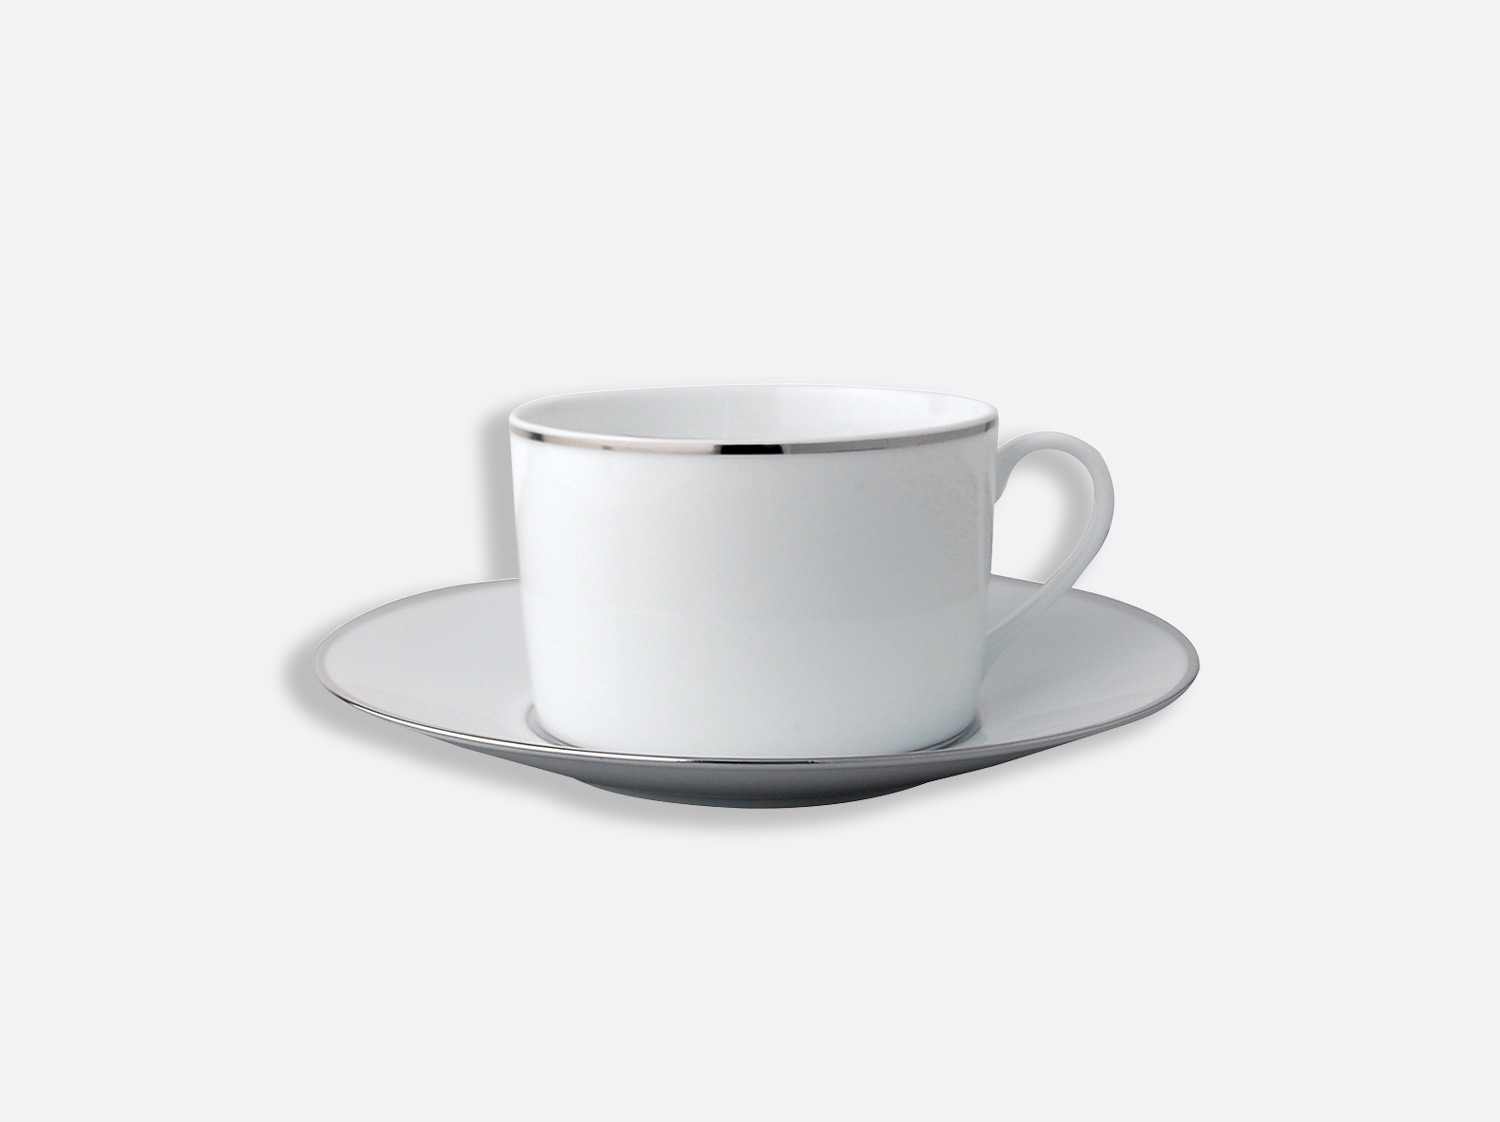 Bernardaud Ecume White Single Espresso Cup and Saucer